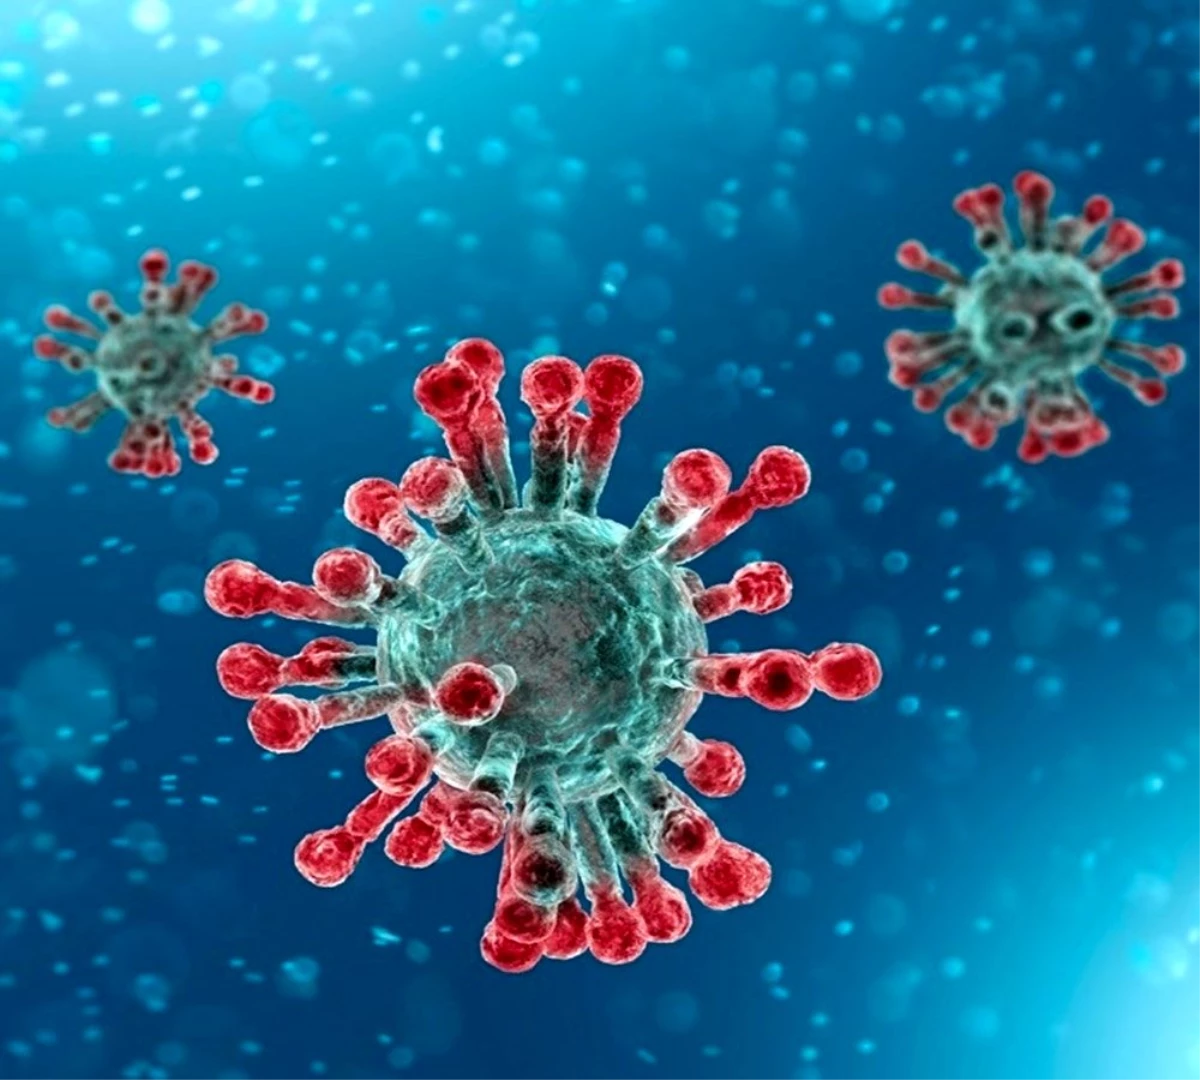 Harvard Üniversitesi: "Korona virüs 2019 sonbaharda yayılmaya başlamış"